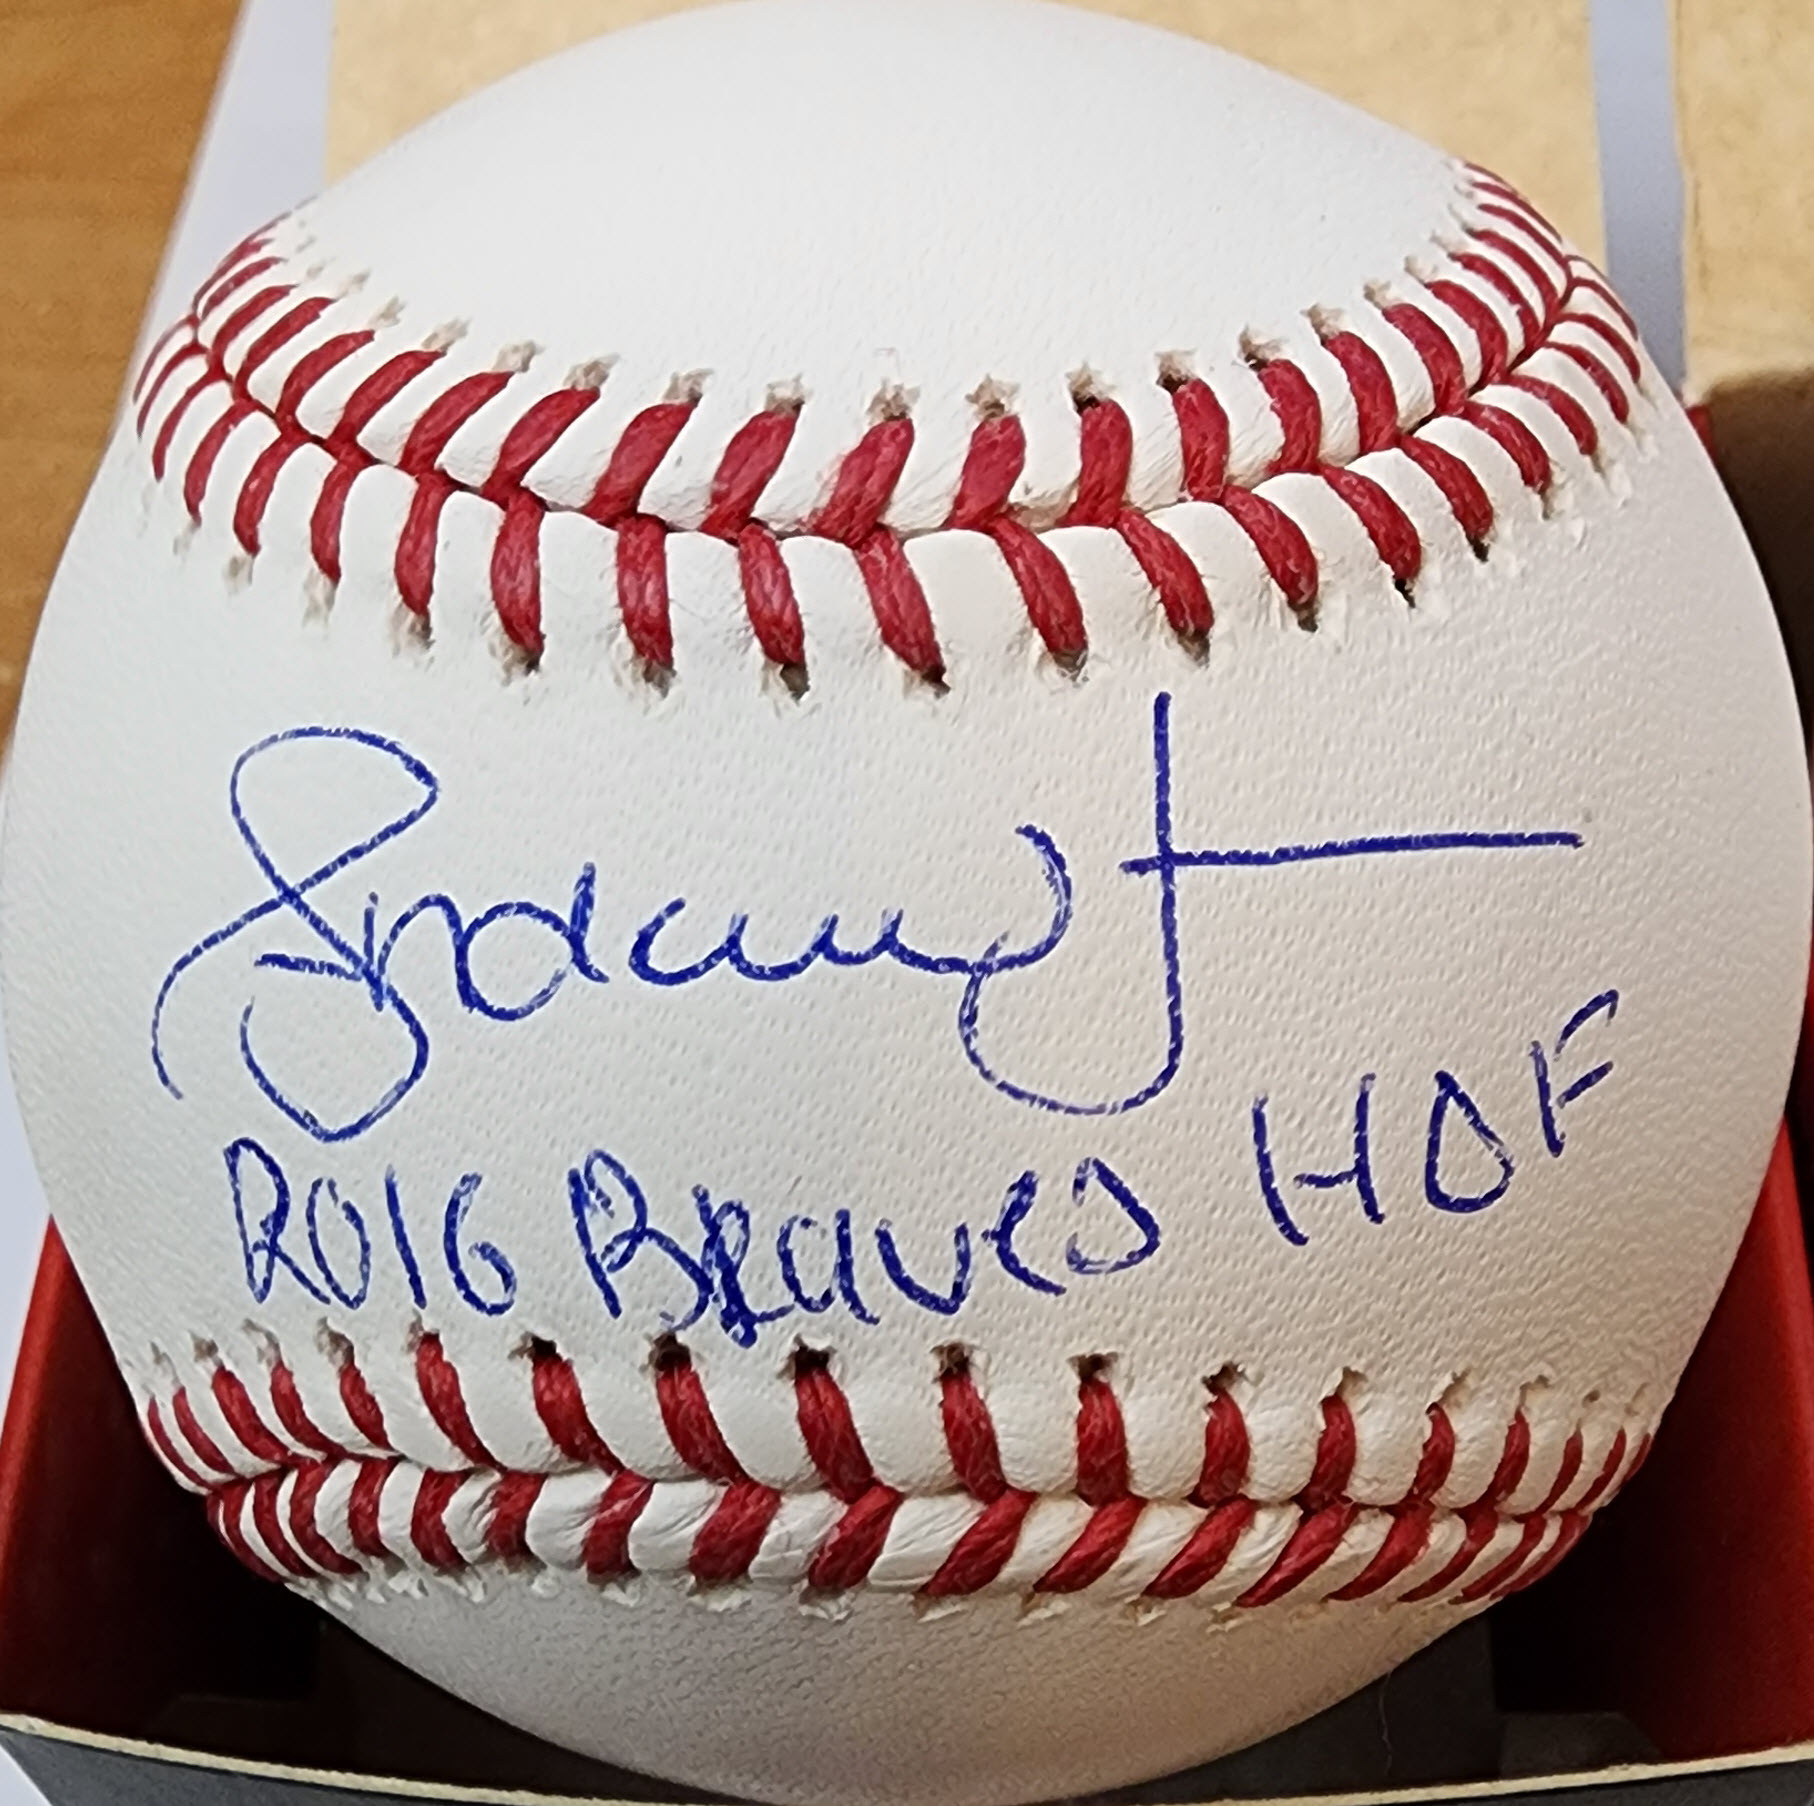 Andruw Jones Autrographed OMLB Baseball 2016 Braves HOF Inscription 1